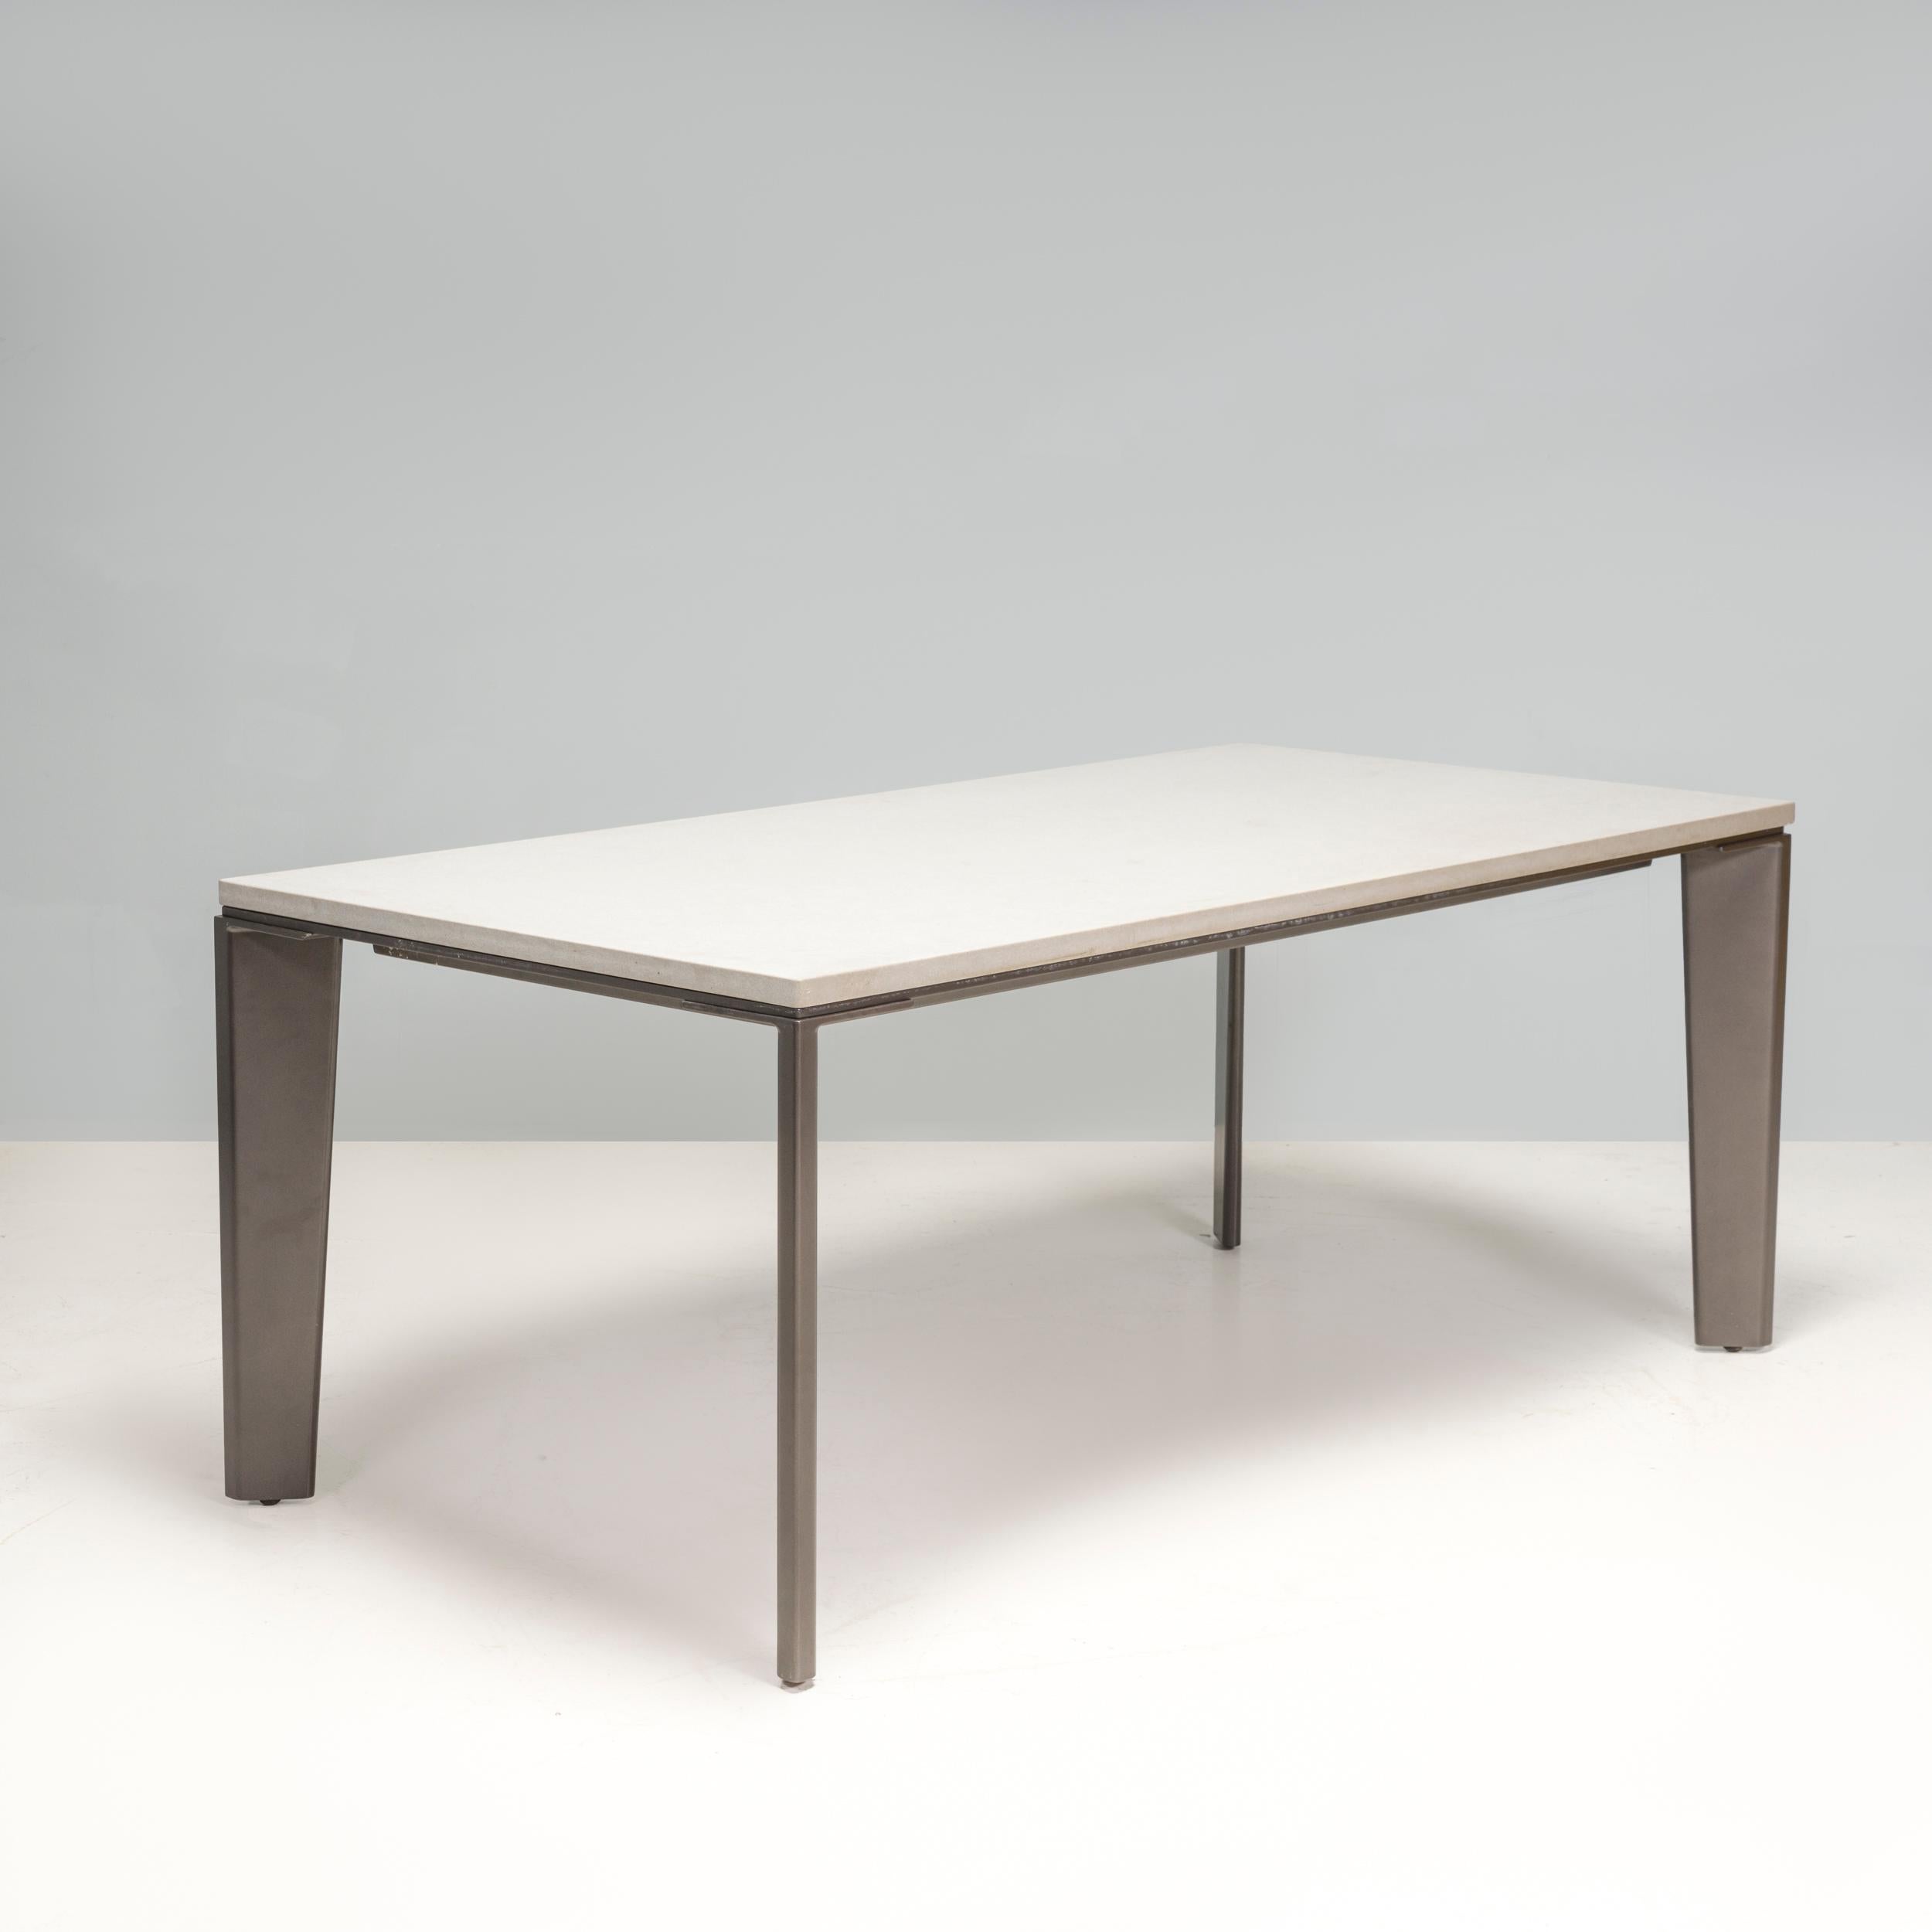 Der Keel Outdoor Dining Table wurde von Holly Hunt entworfen und im Jahr 2022 hergestellt. Er hat eine rechteckige weiße Oberfläche, die im Kontrast zu der sie begrenzenden schwarzen Struktur steht, und besticht durch seine moderne Ästhetik. 

Die